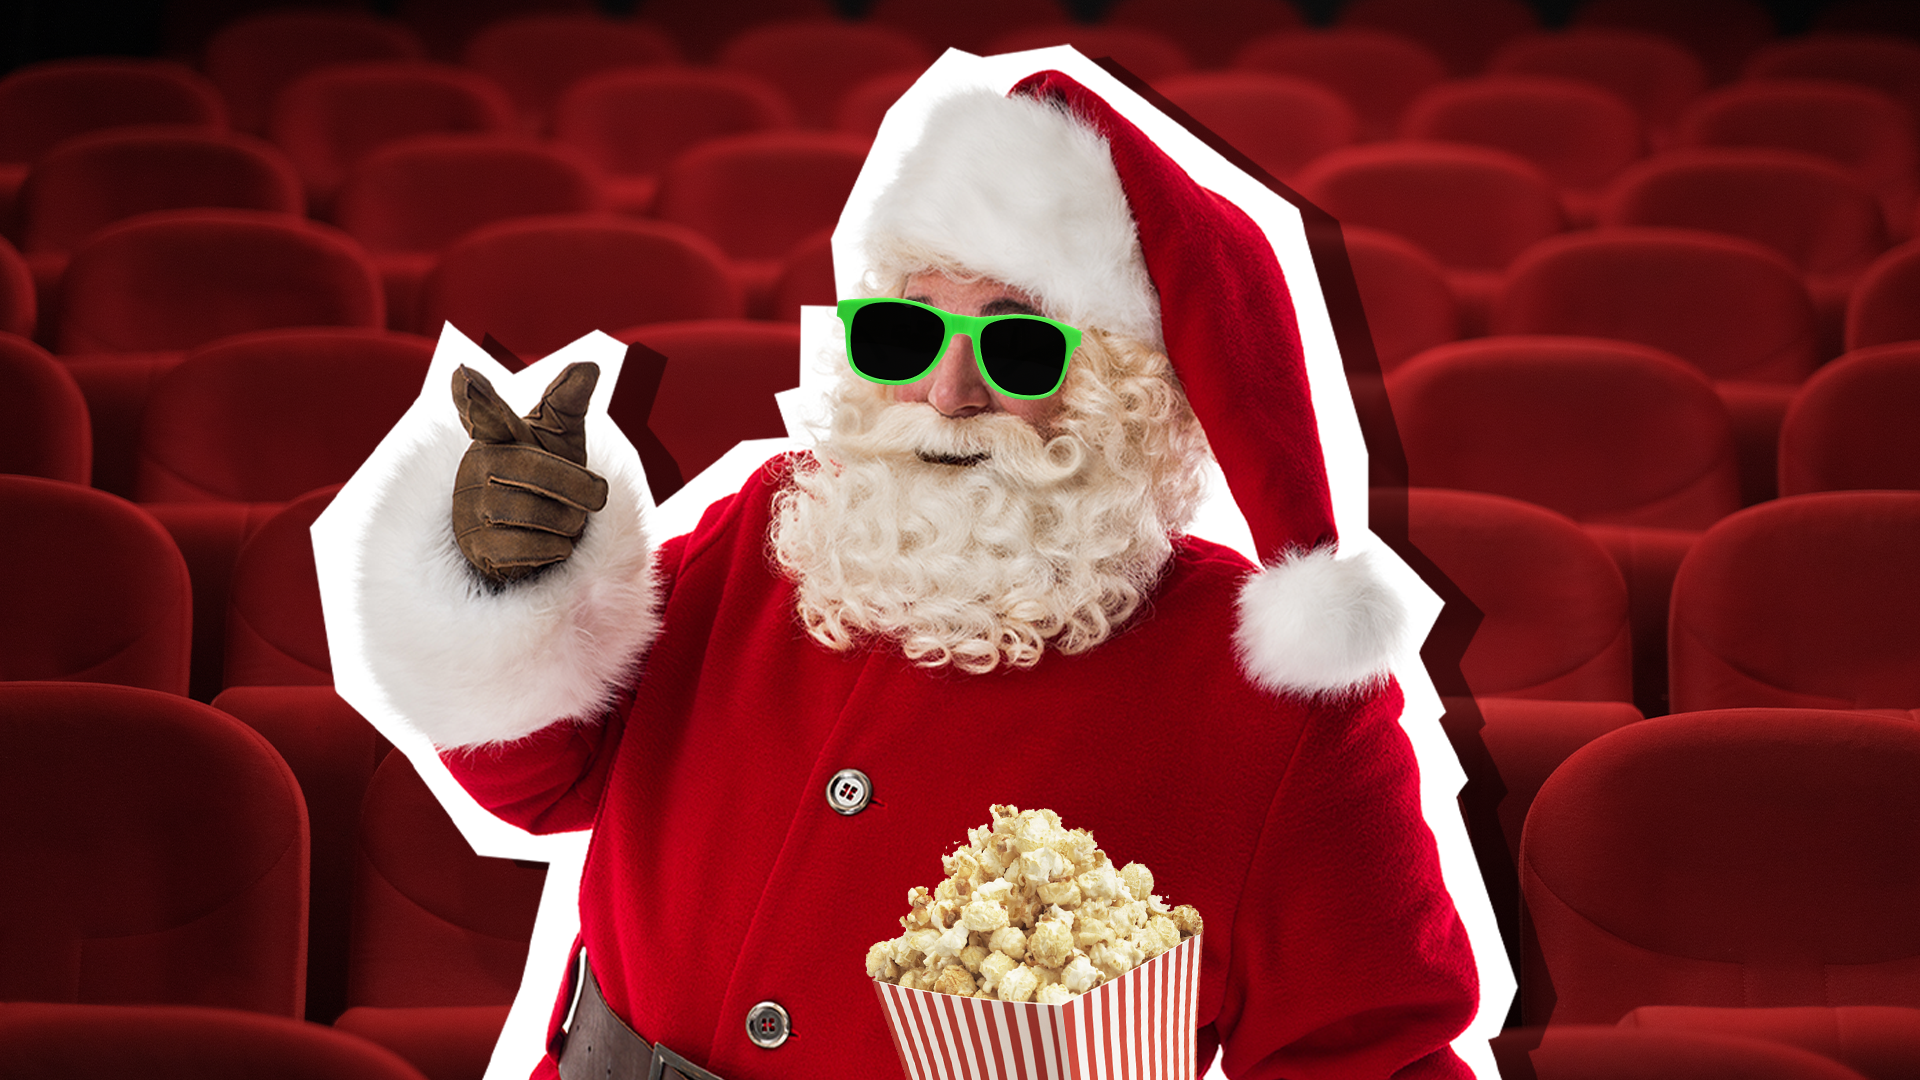 Santa in the cinema